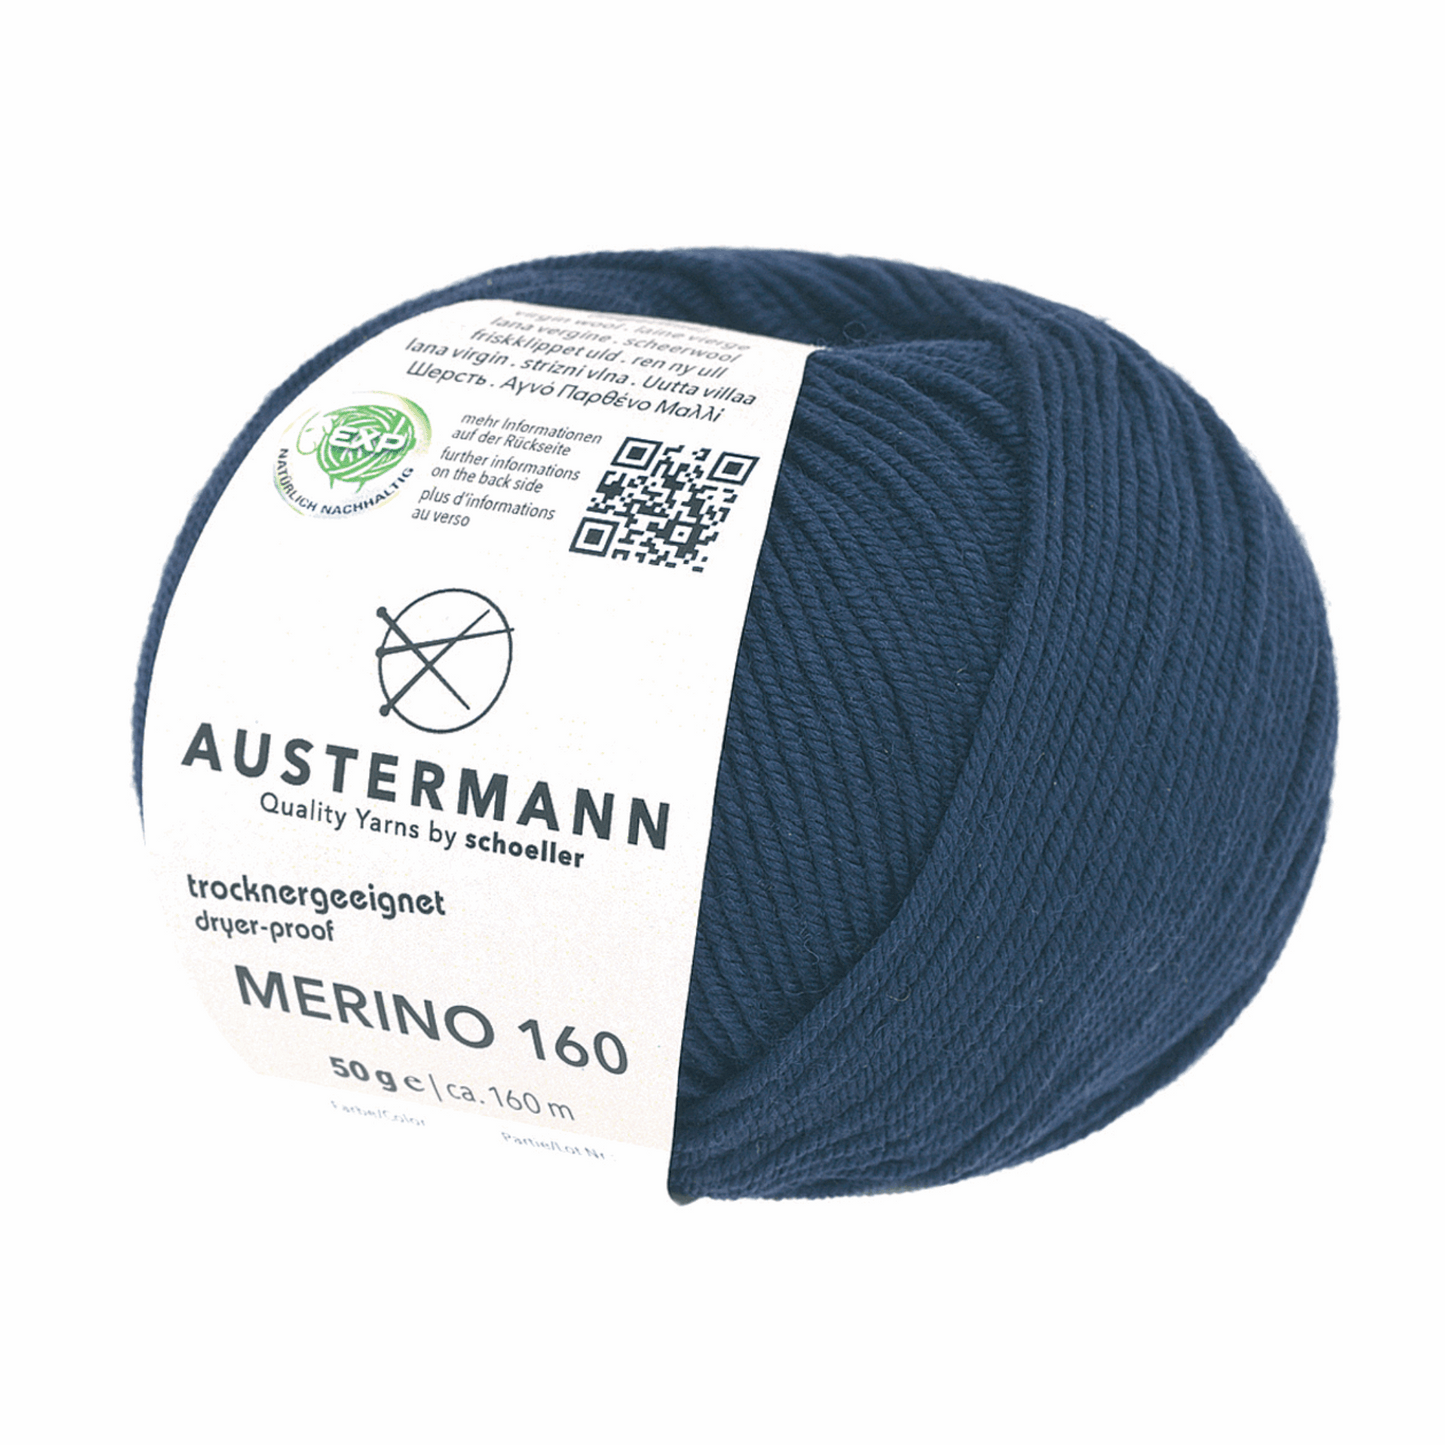 Austermann Merino 160 EXP 50g, 97610, Farbe blau 204